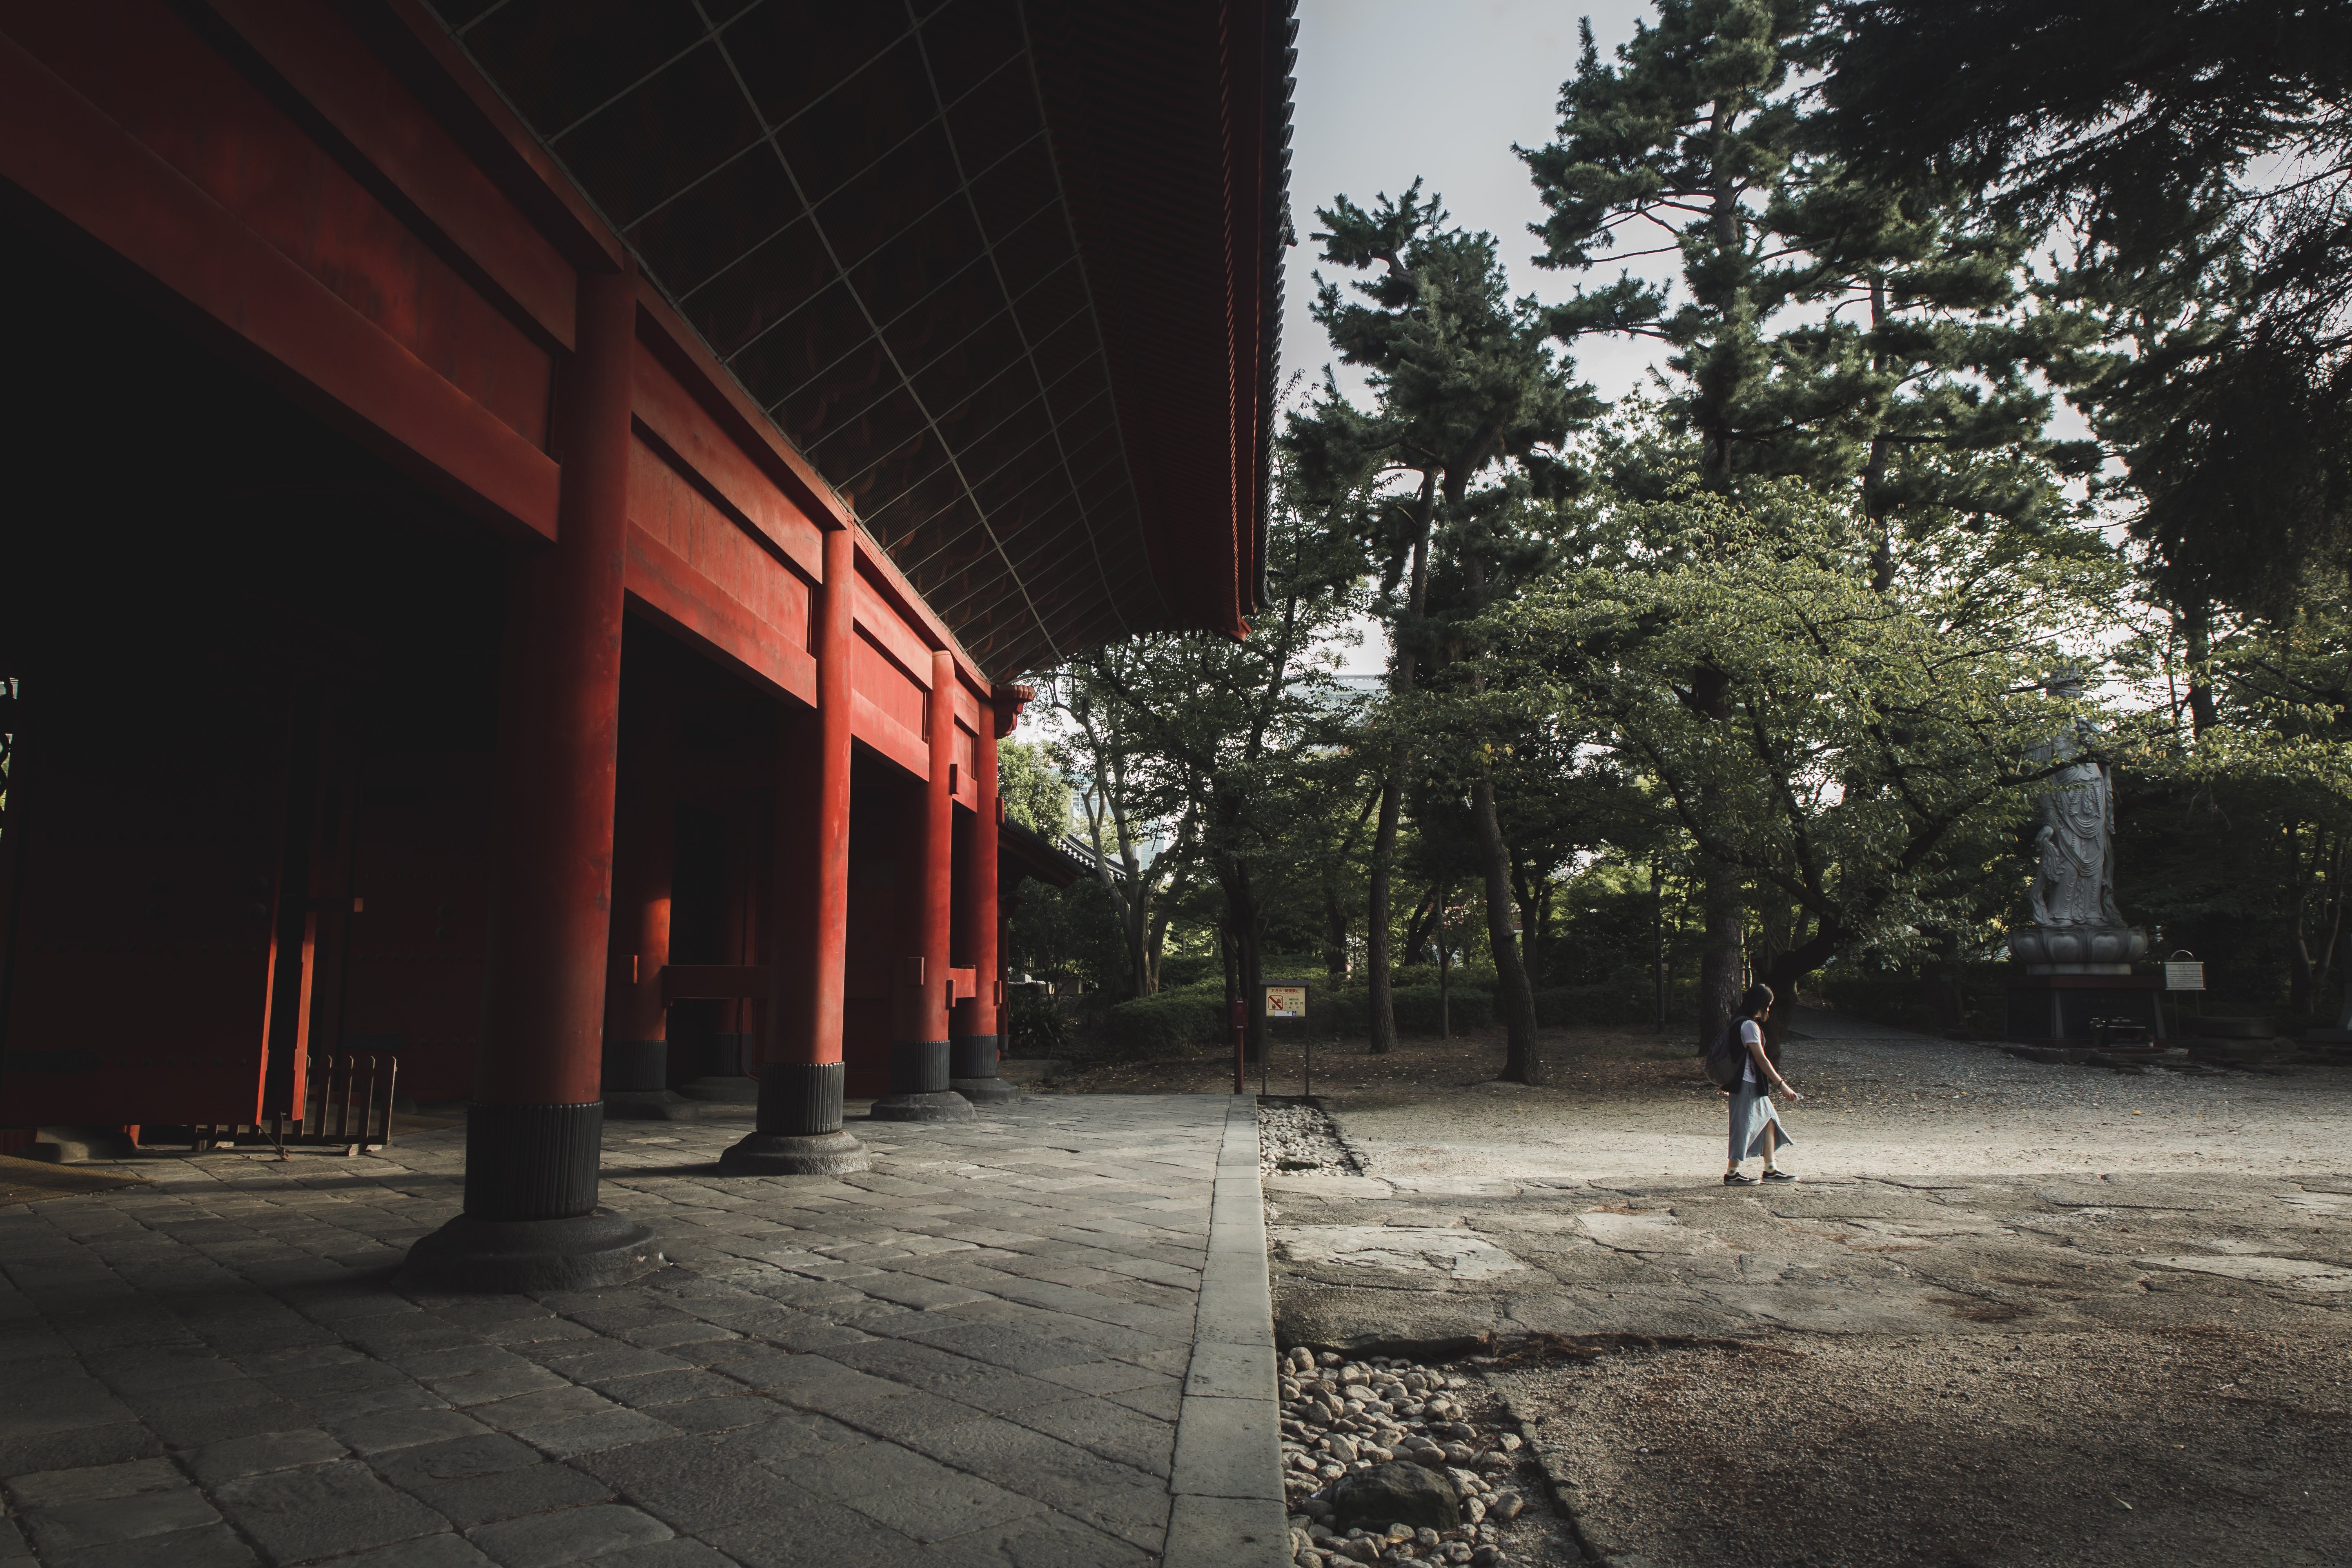 写真を歩いている人と赤い建物と木々 